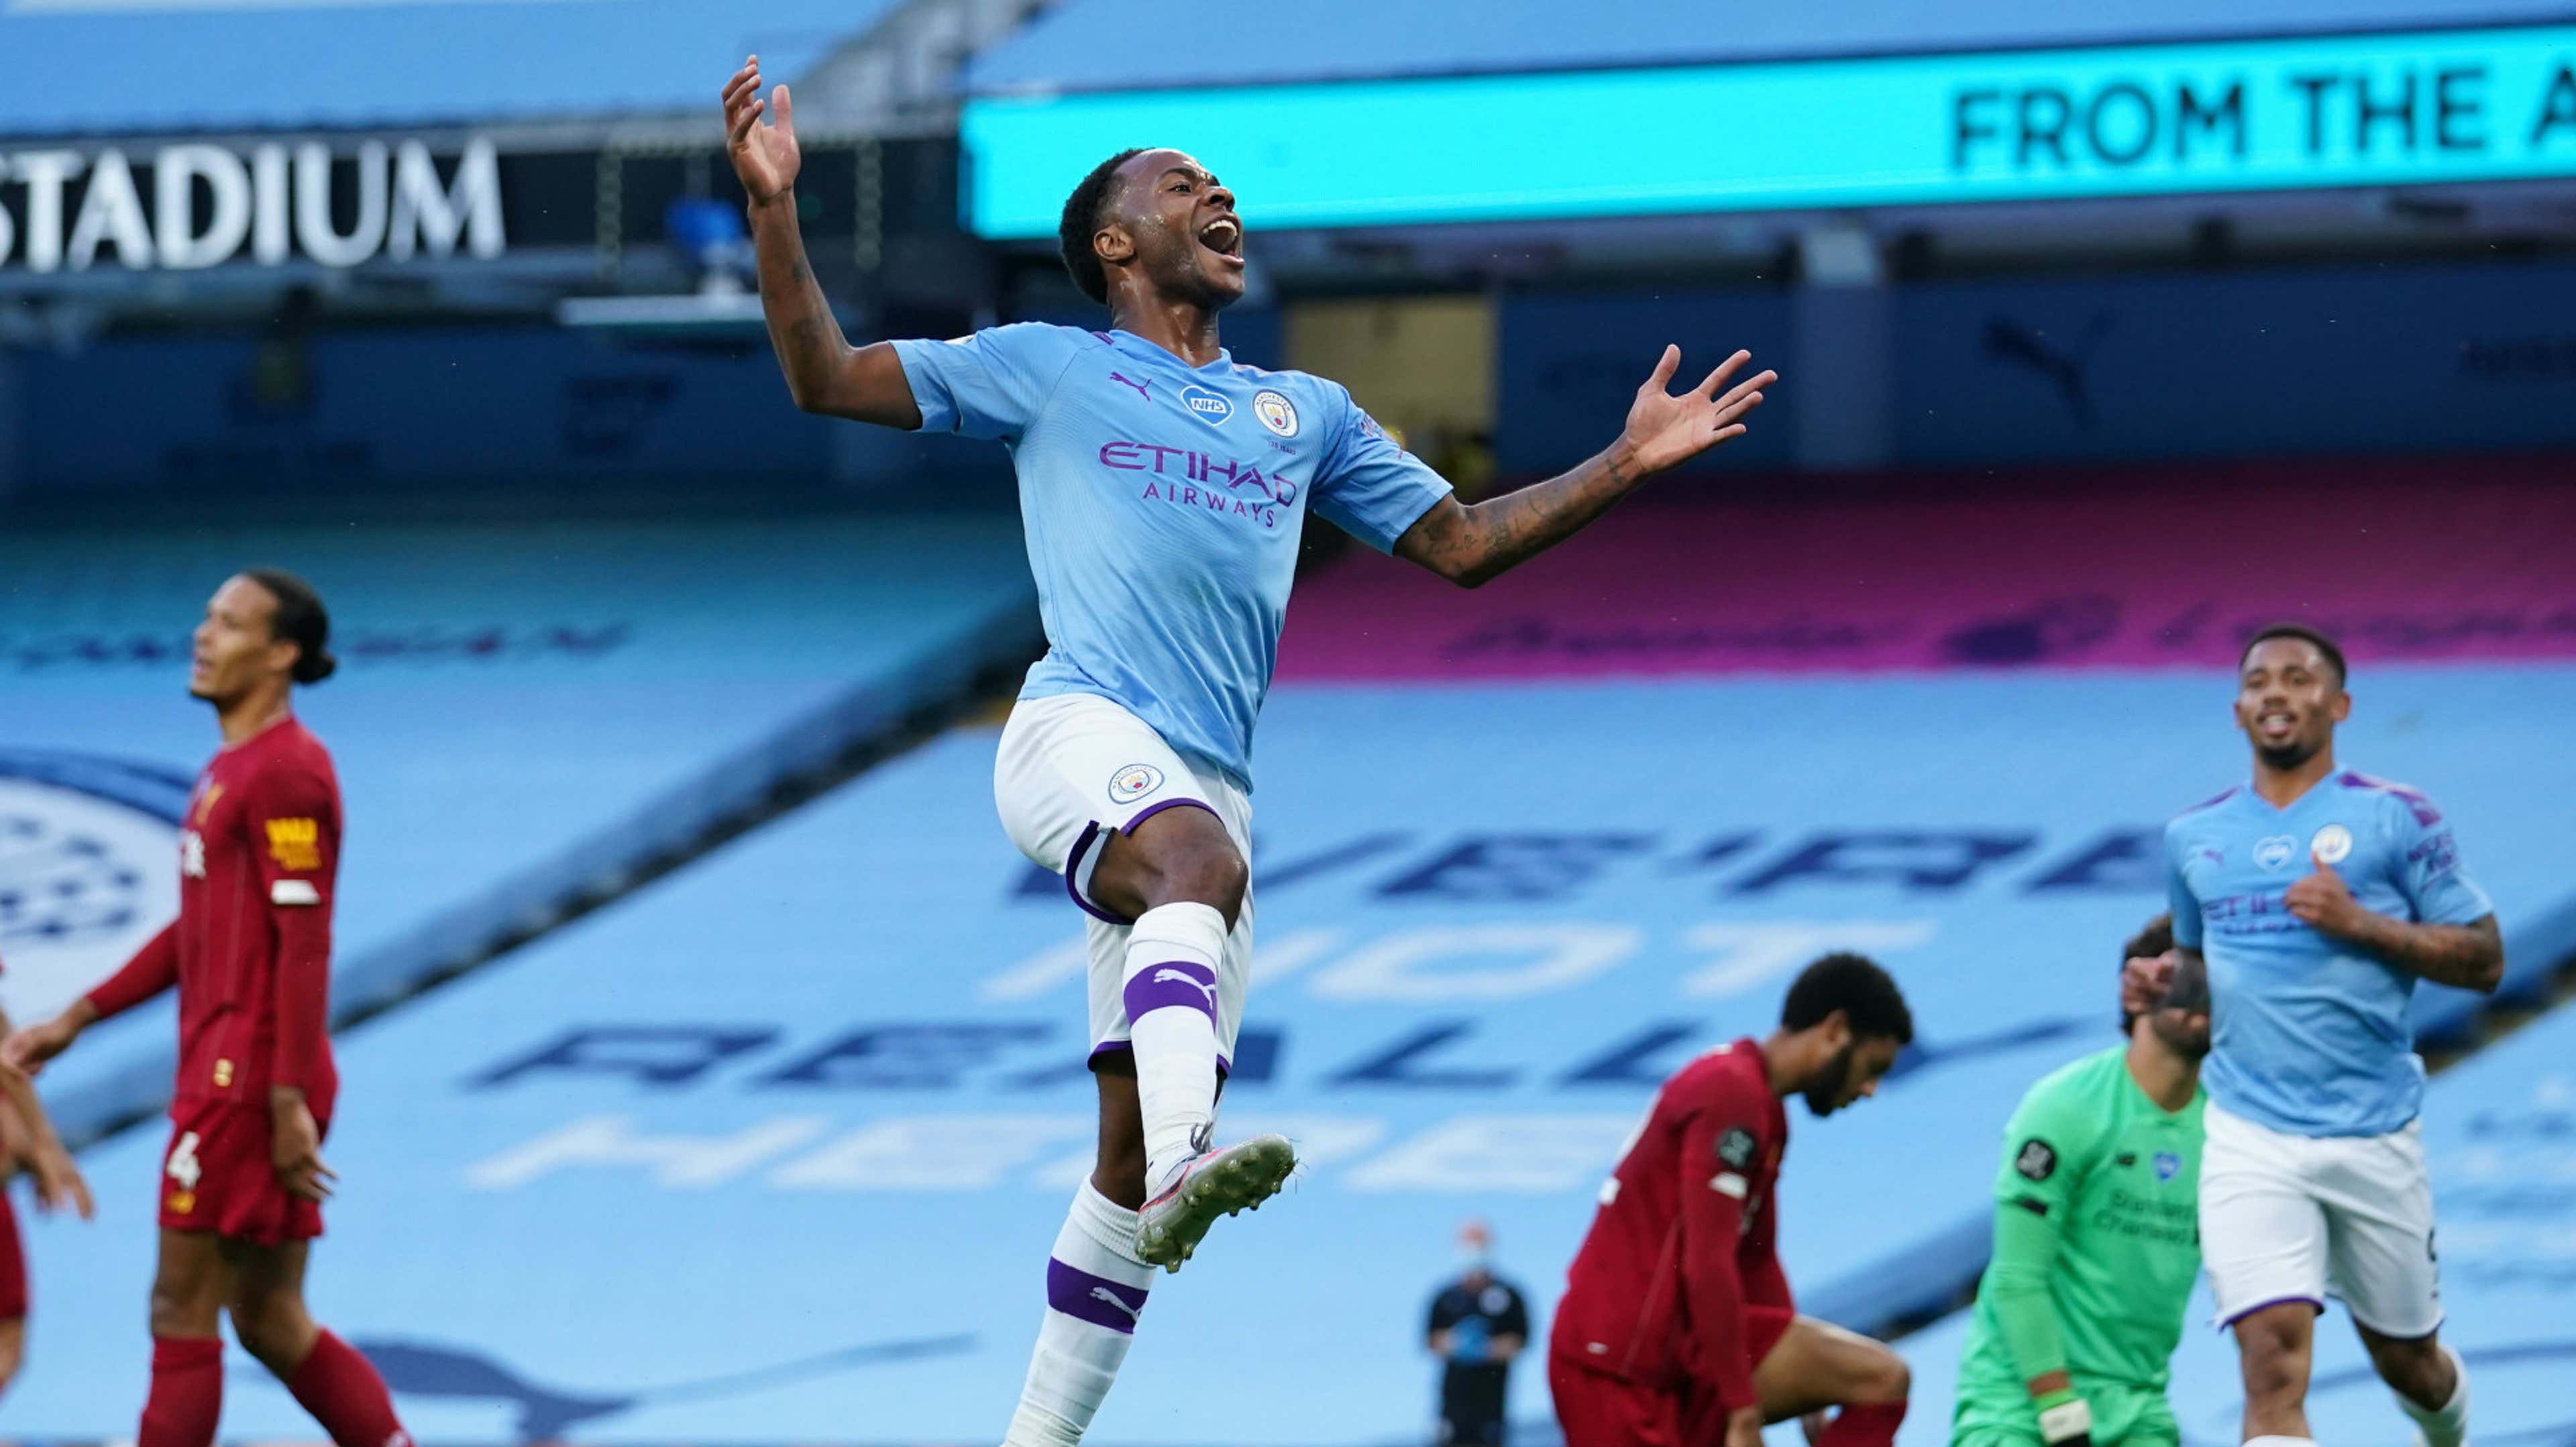 Raheem Sterling Manchester City vs Liverpool Premier League 2019-20